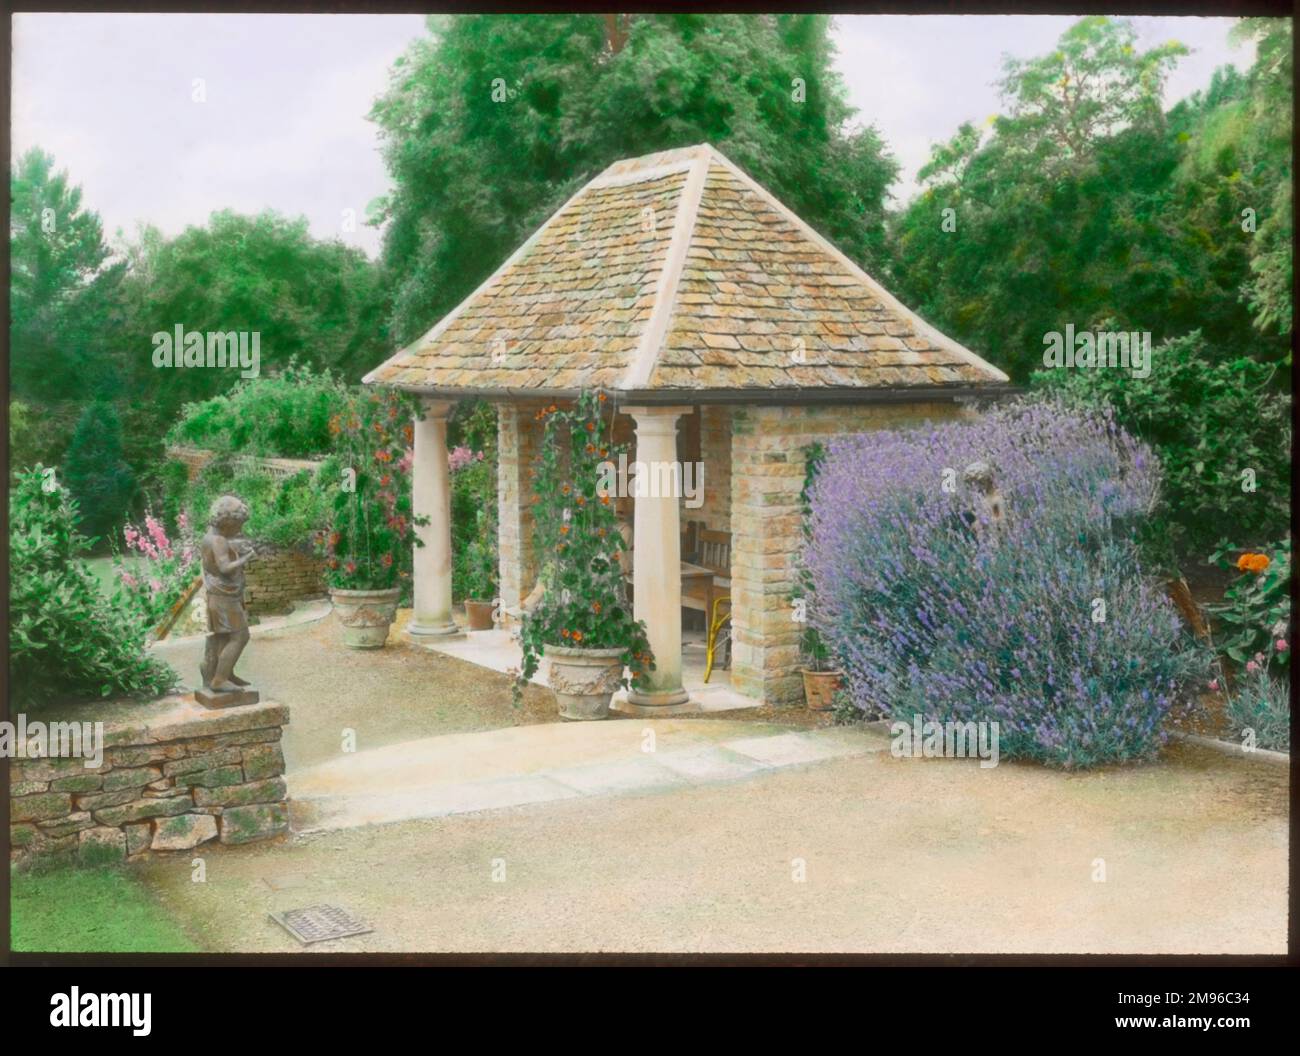 Ein Gartensitz in den formellen Gärten von Abbotswood, Stow on the Wold, Gloucestershire. Der Sitz hat zwei Säulen im klassischen Stil (Toskana) an der Vorderseite und ein gefliestes Dach. Die Gärten wurden von Sir Edwin Lutyens geschaffen. Stockfoto